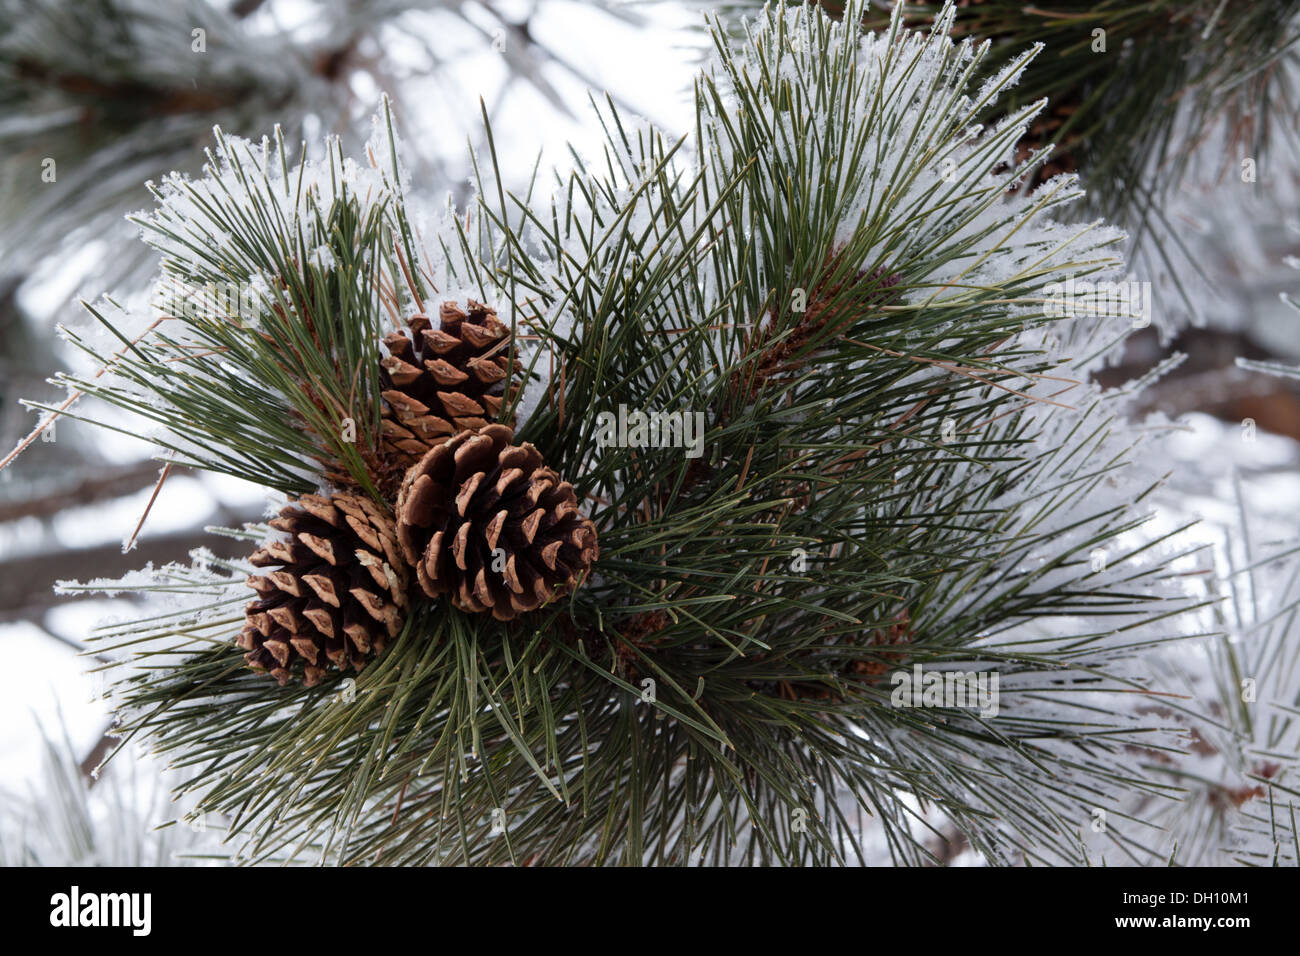 Three pine cones in snow Stock Photo